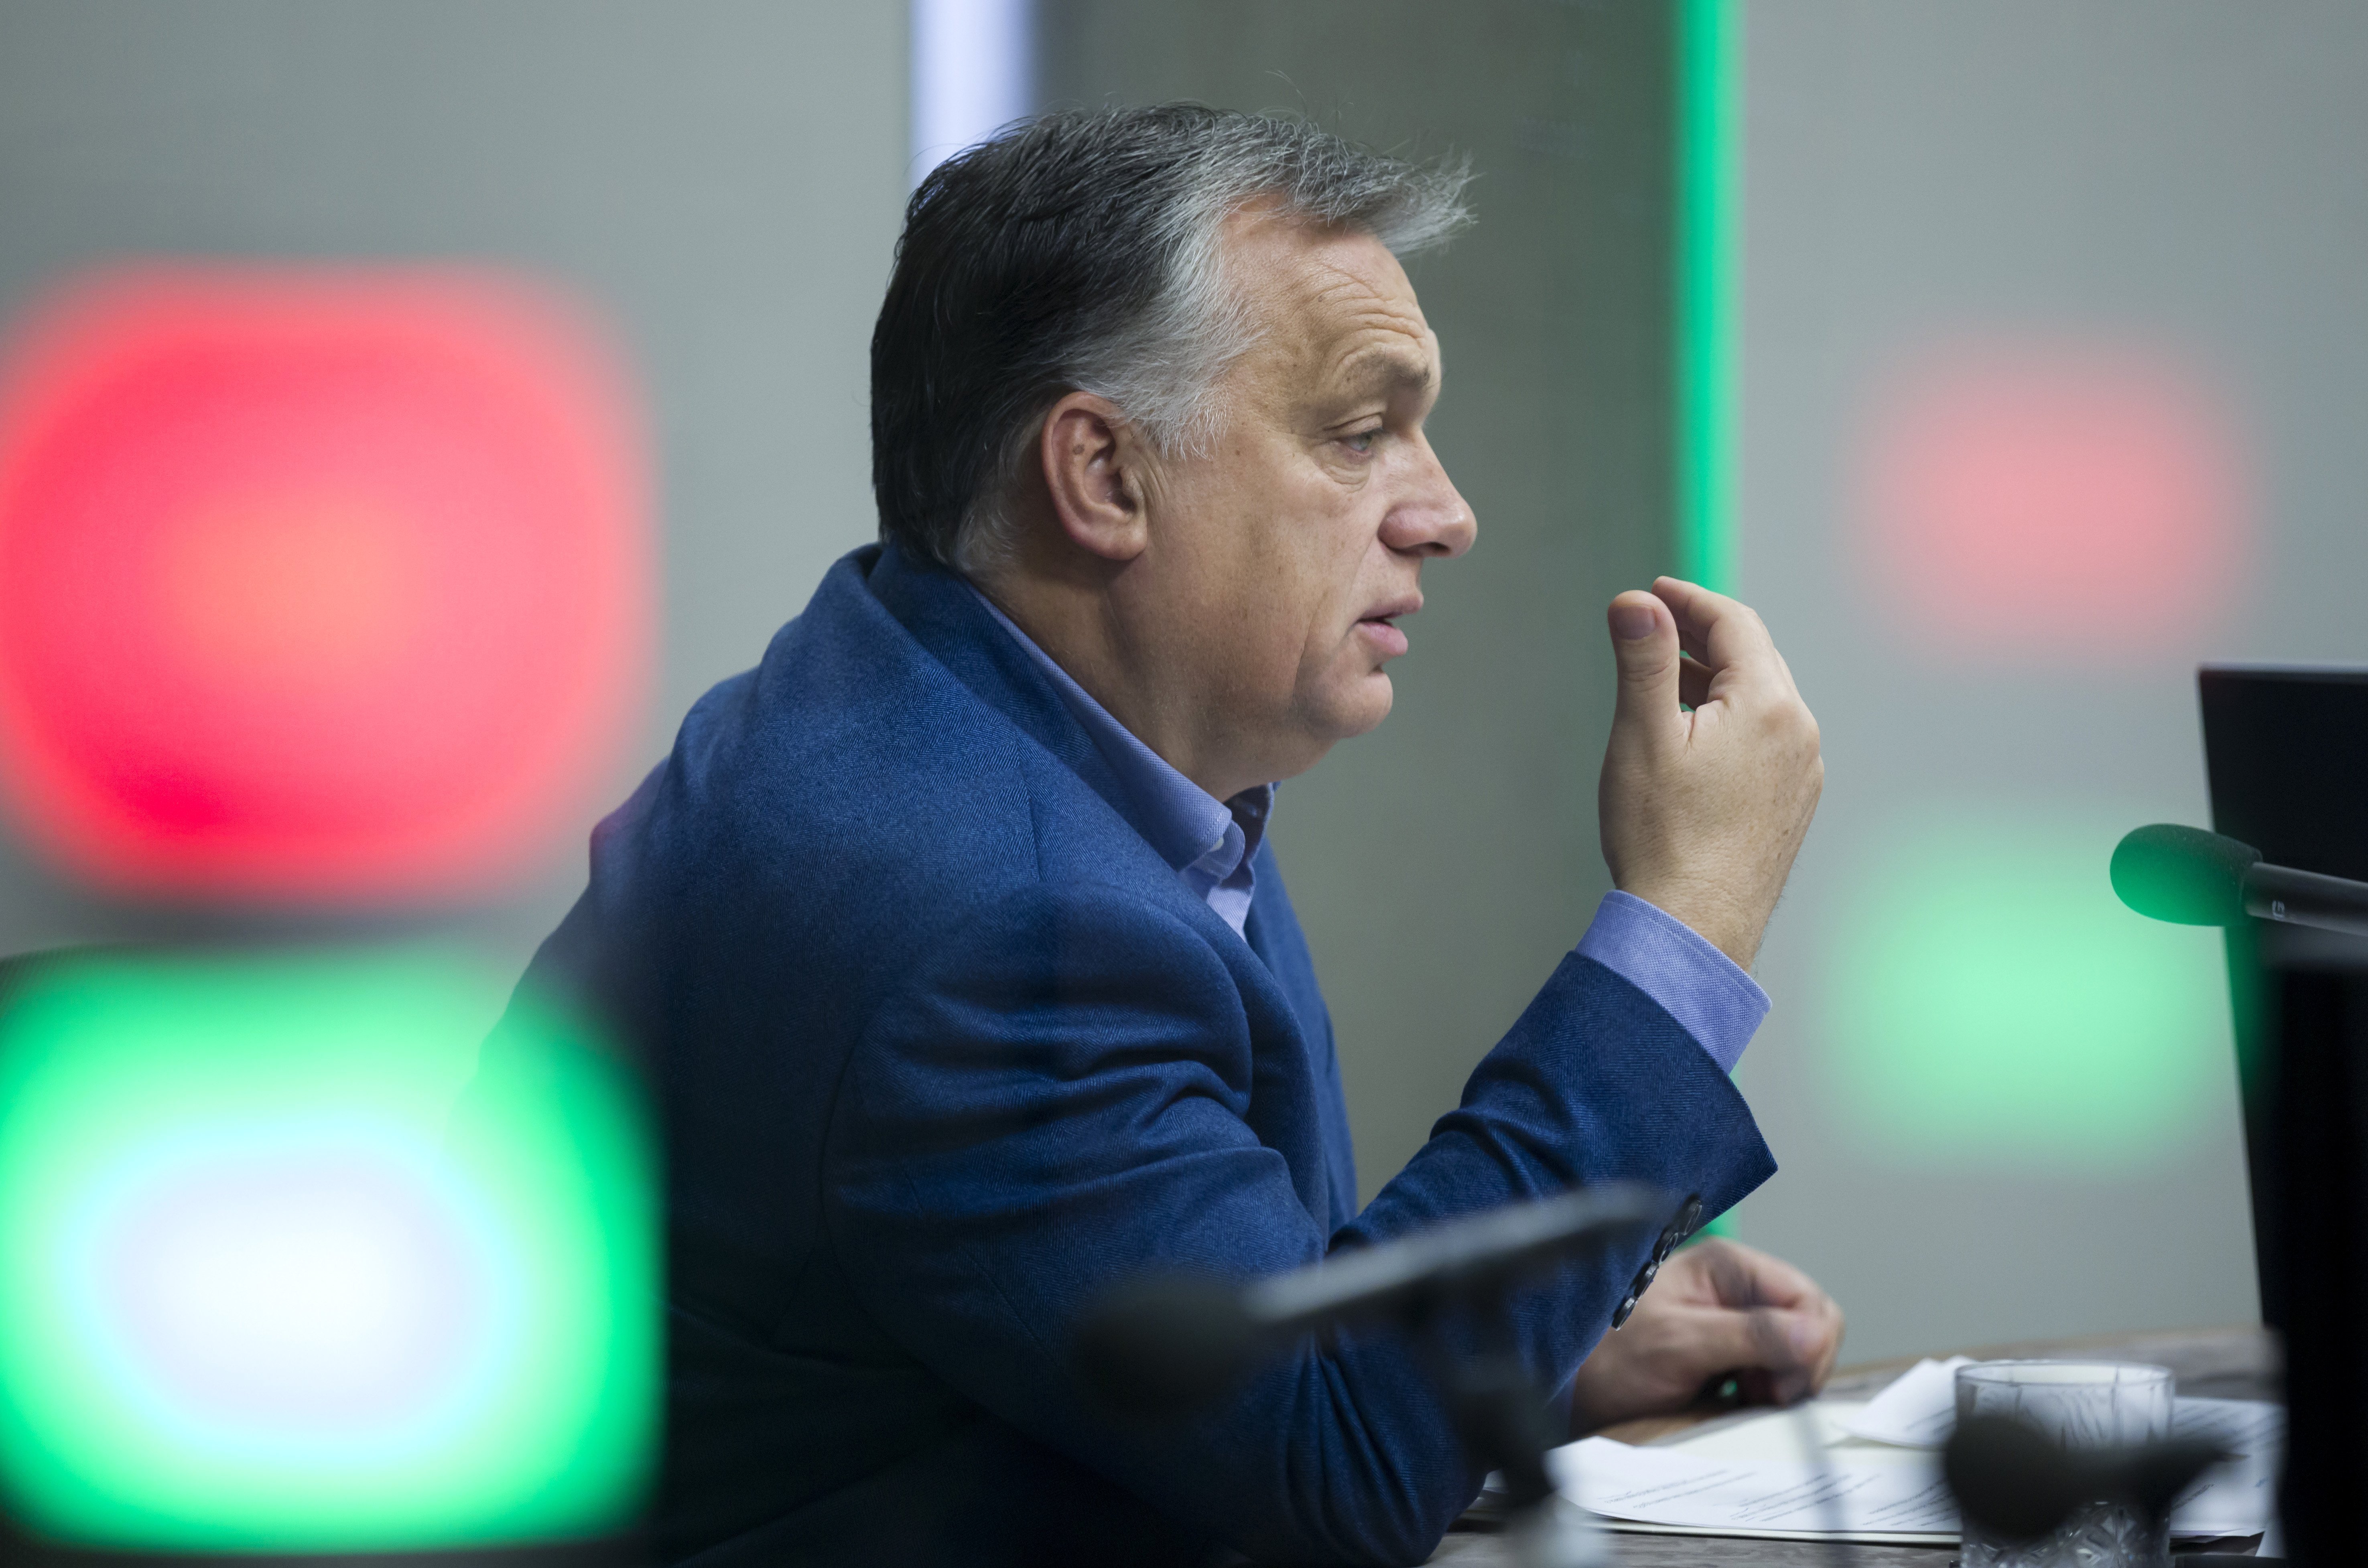 Közjószág, asszonyság, libernyák - ismét felszólaltak Orbán Viktor szóválasztása miatt